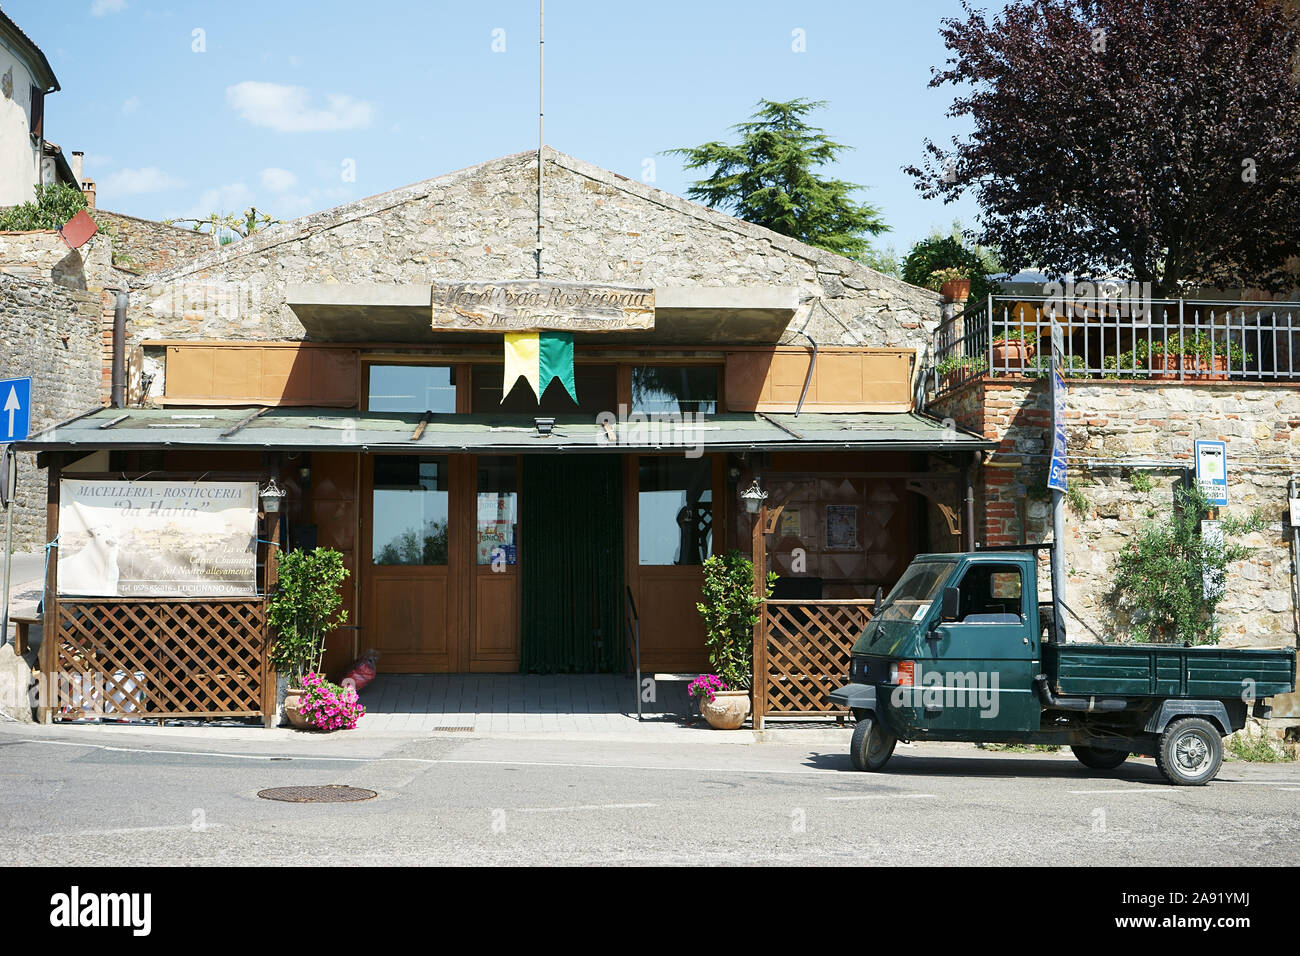 Ape car Piaggio near tuscan butcher shop ' Da Maria' in Lucignano in Valdichiana, tuscany, italy Stock Photo